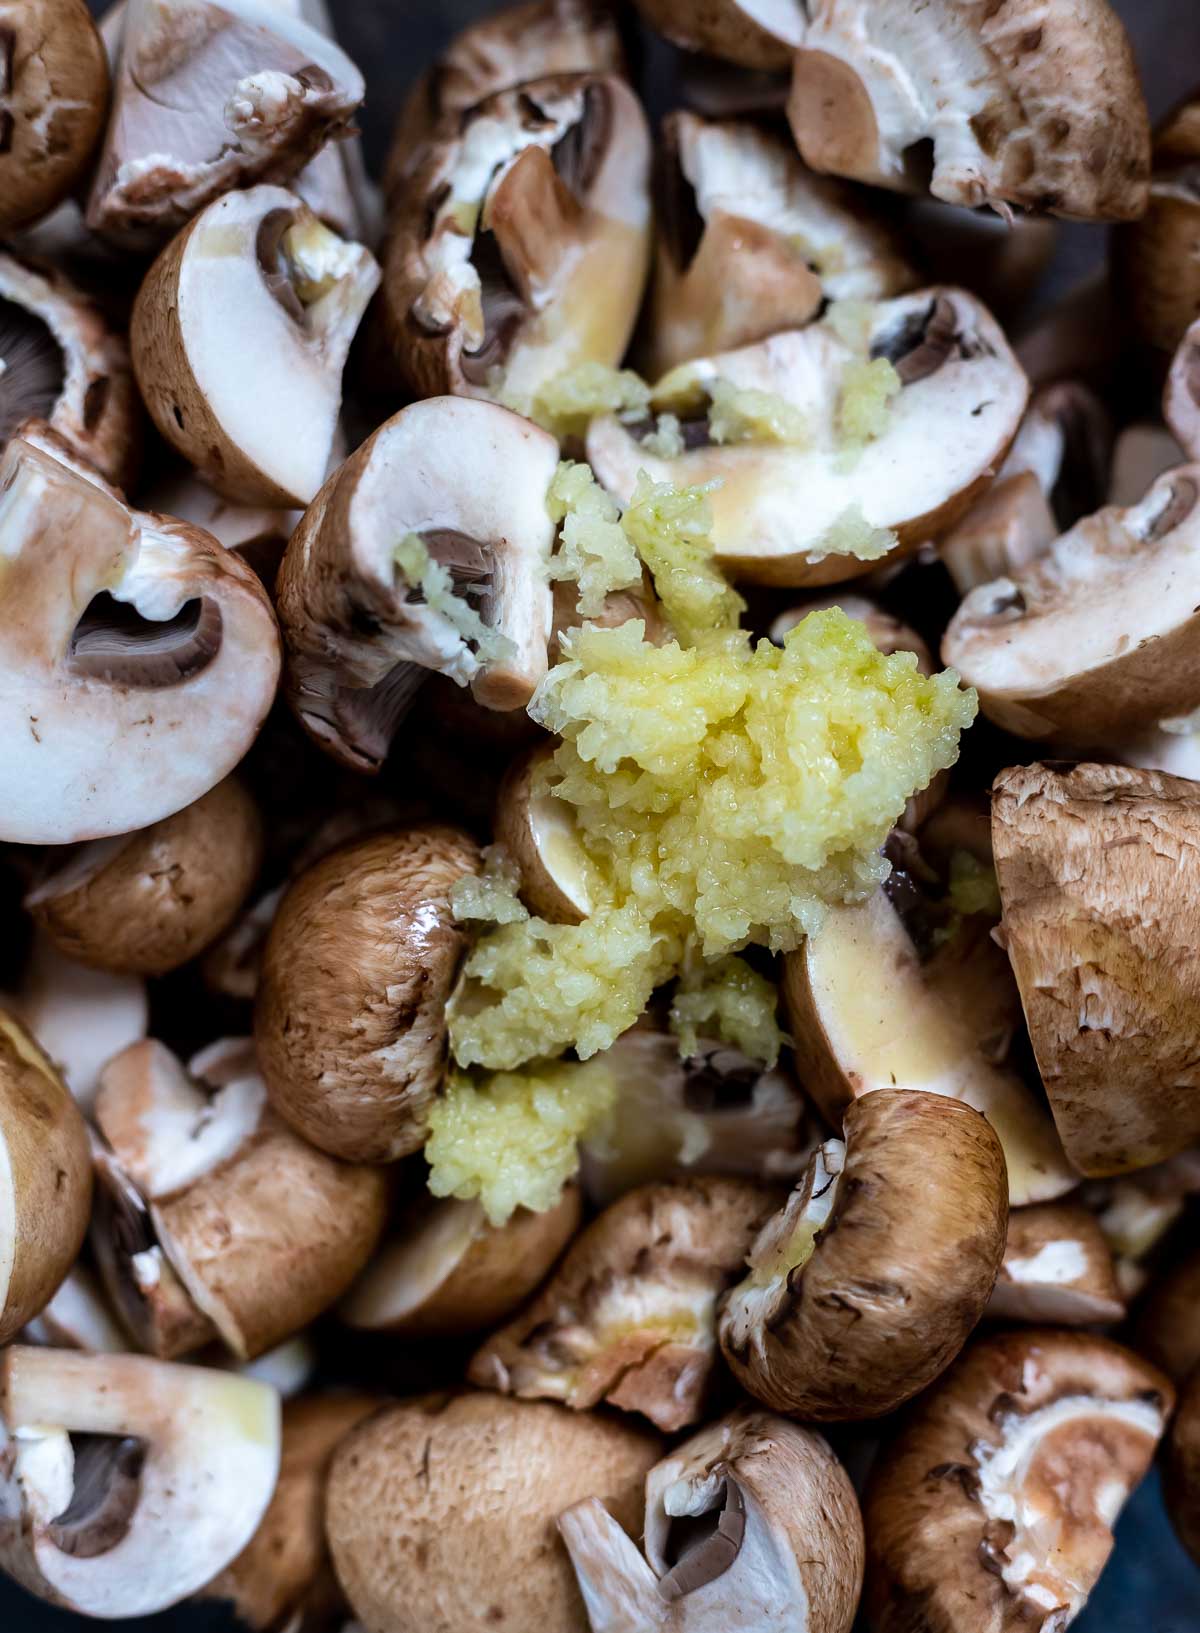 raw mushrooms and grated garlic